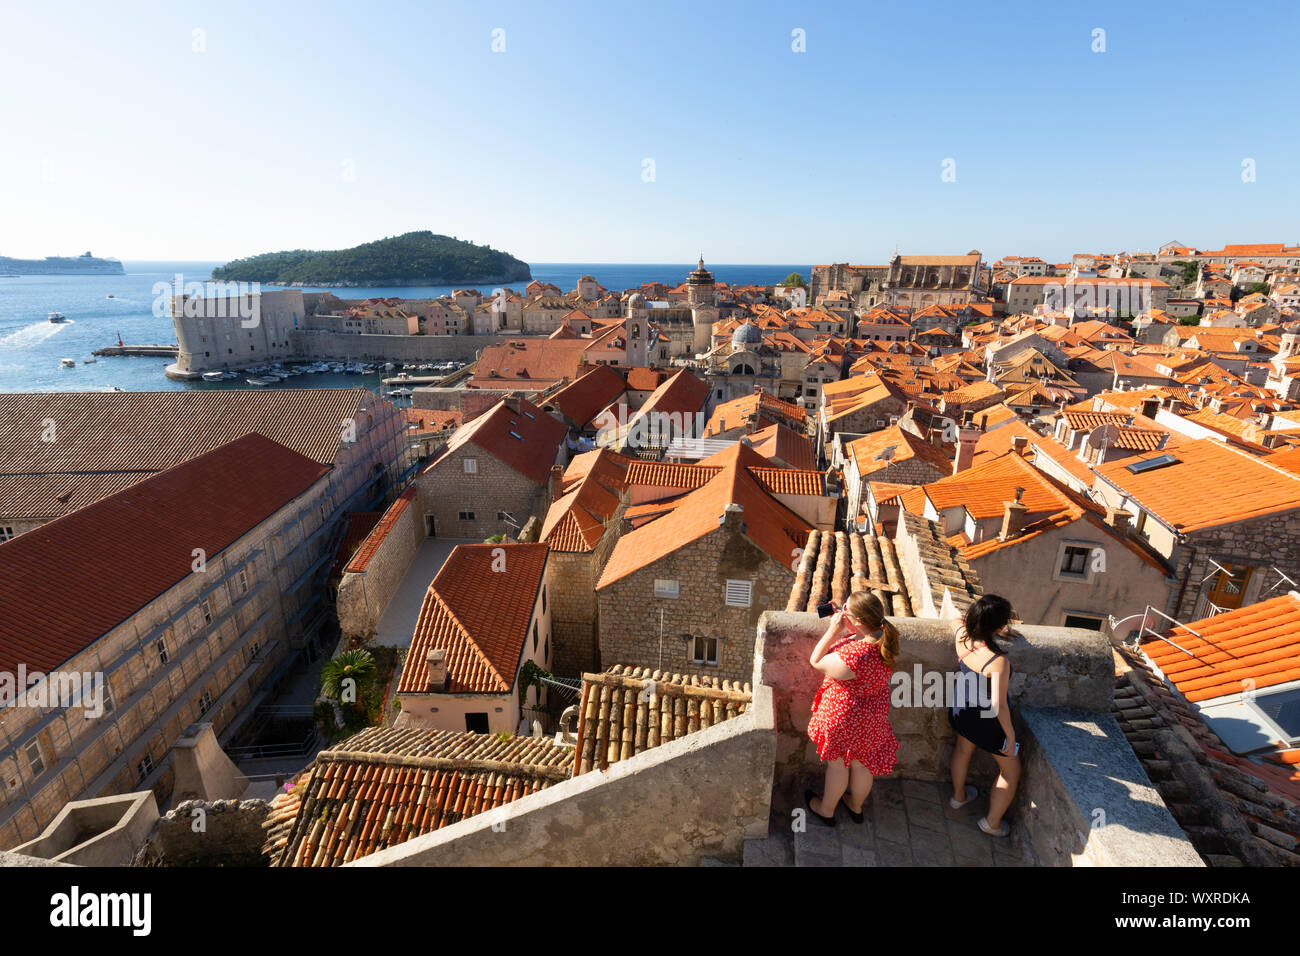 Les touristes de Dubrovnik ; deux femmes autour des murs de la ville, Stari Grad aka la vieille ville de Dubrovnik classée au patrimoine mondial de l'UNESCO, Dubrovnik Croatie Europe Banque D'Images